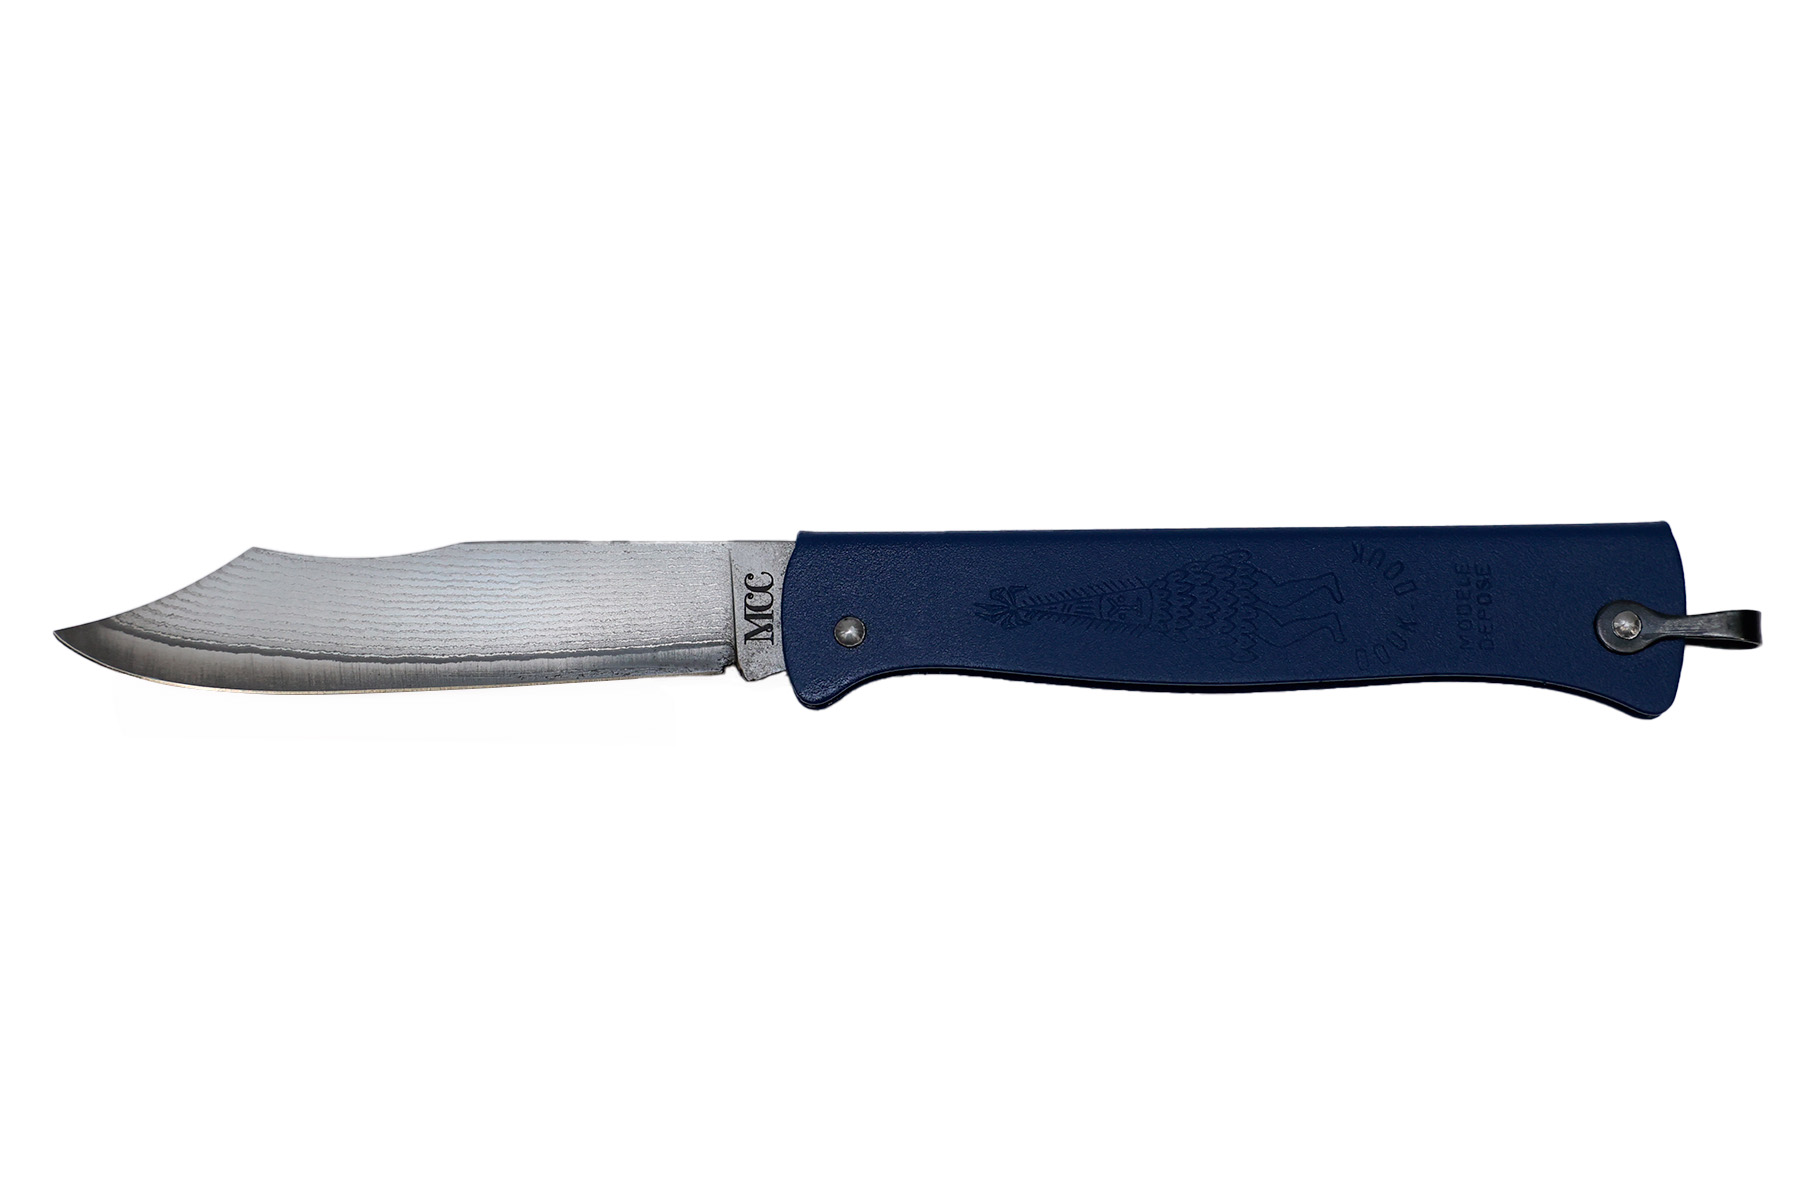 Couteau pliant Douk-Douk de Cognet " VG10 damas" série limitée - Bleu